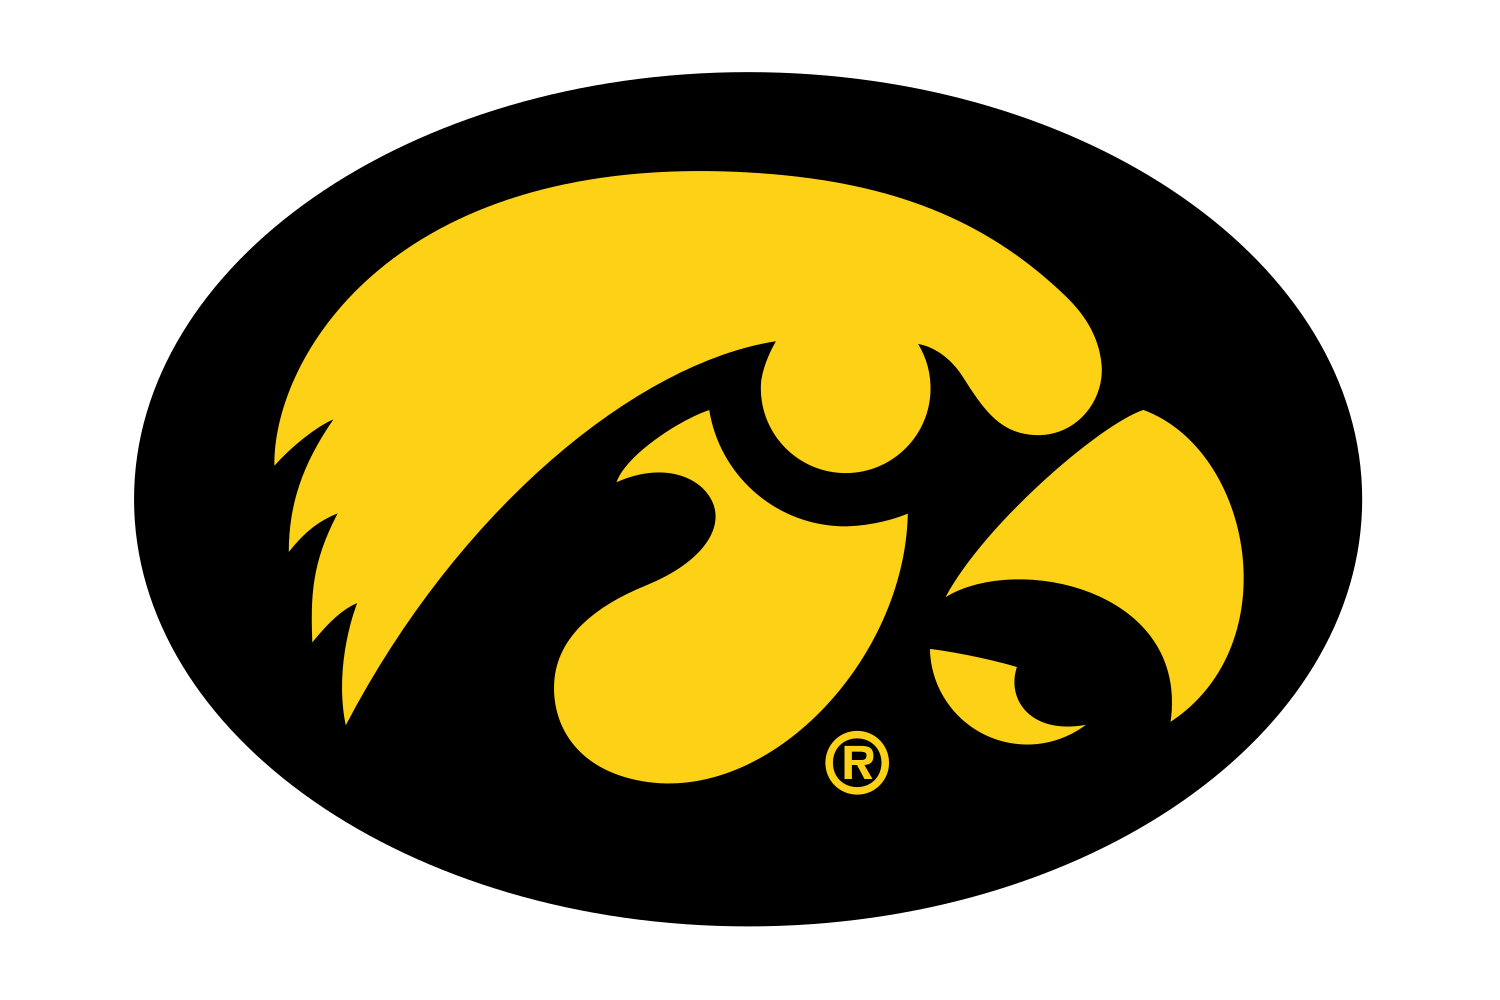 Tigerhawk Logo - Iowa Hawkeyes Logo, Iowa Hawkeyes Symbol, Meaning, History and Evolution